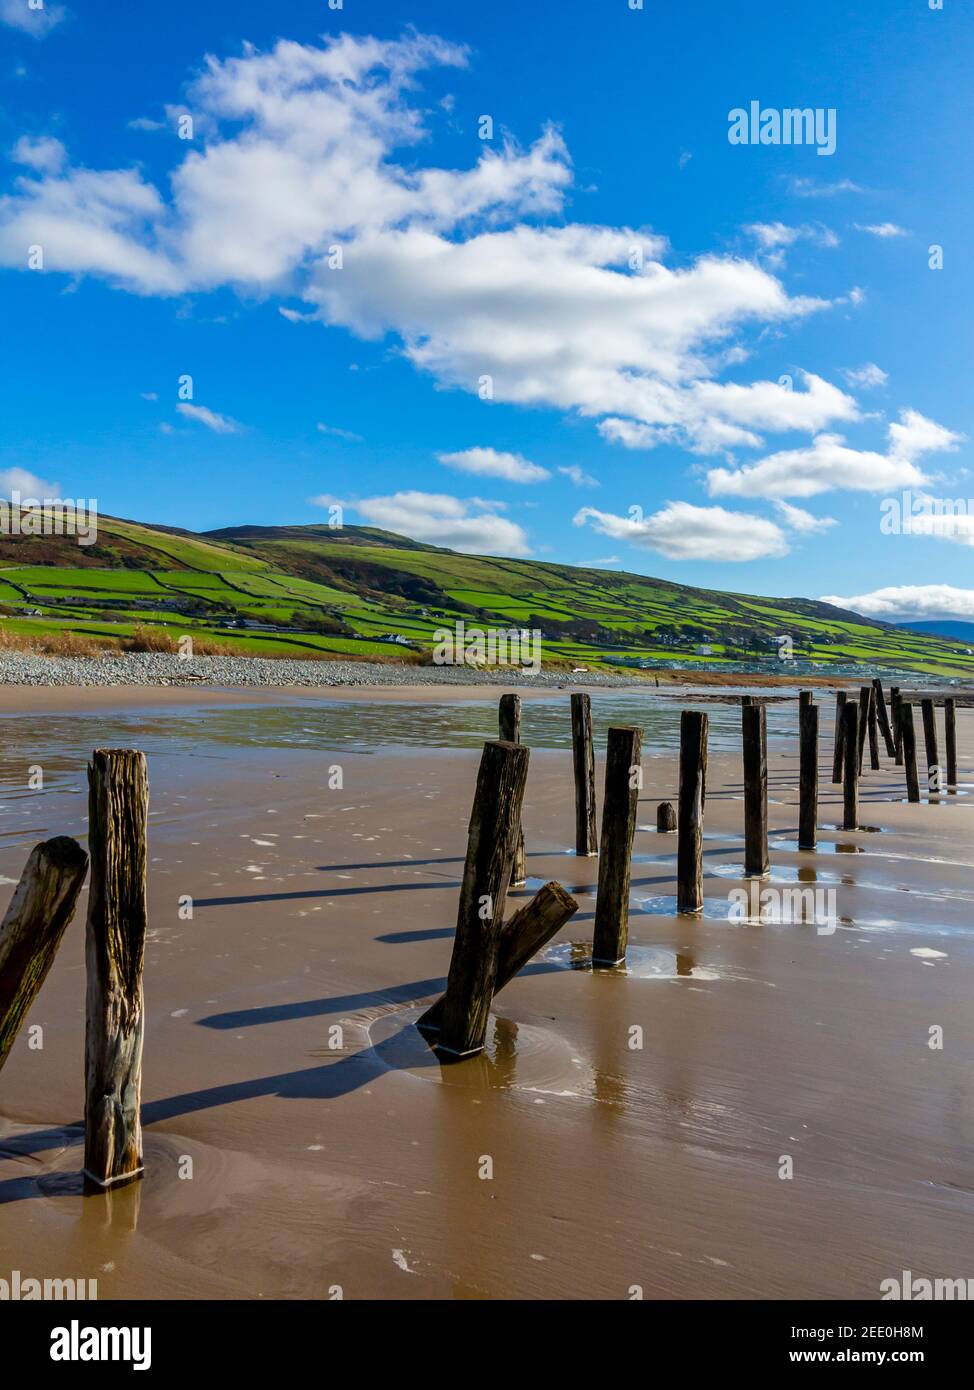 La plage de sable à Barmouth Bay ou Abermaw à Gwynedd sur la côte nord-ouest du pays de Galles avec les montagnes de Snowdonia à distance de tne. Banque D'Images